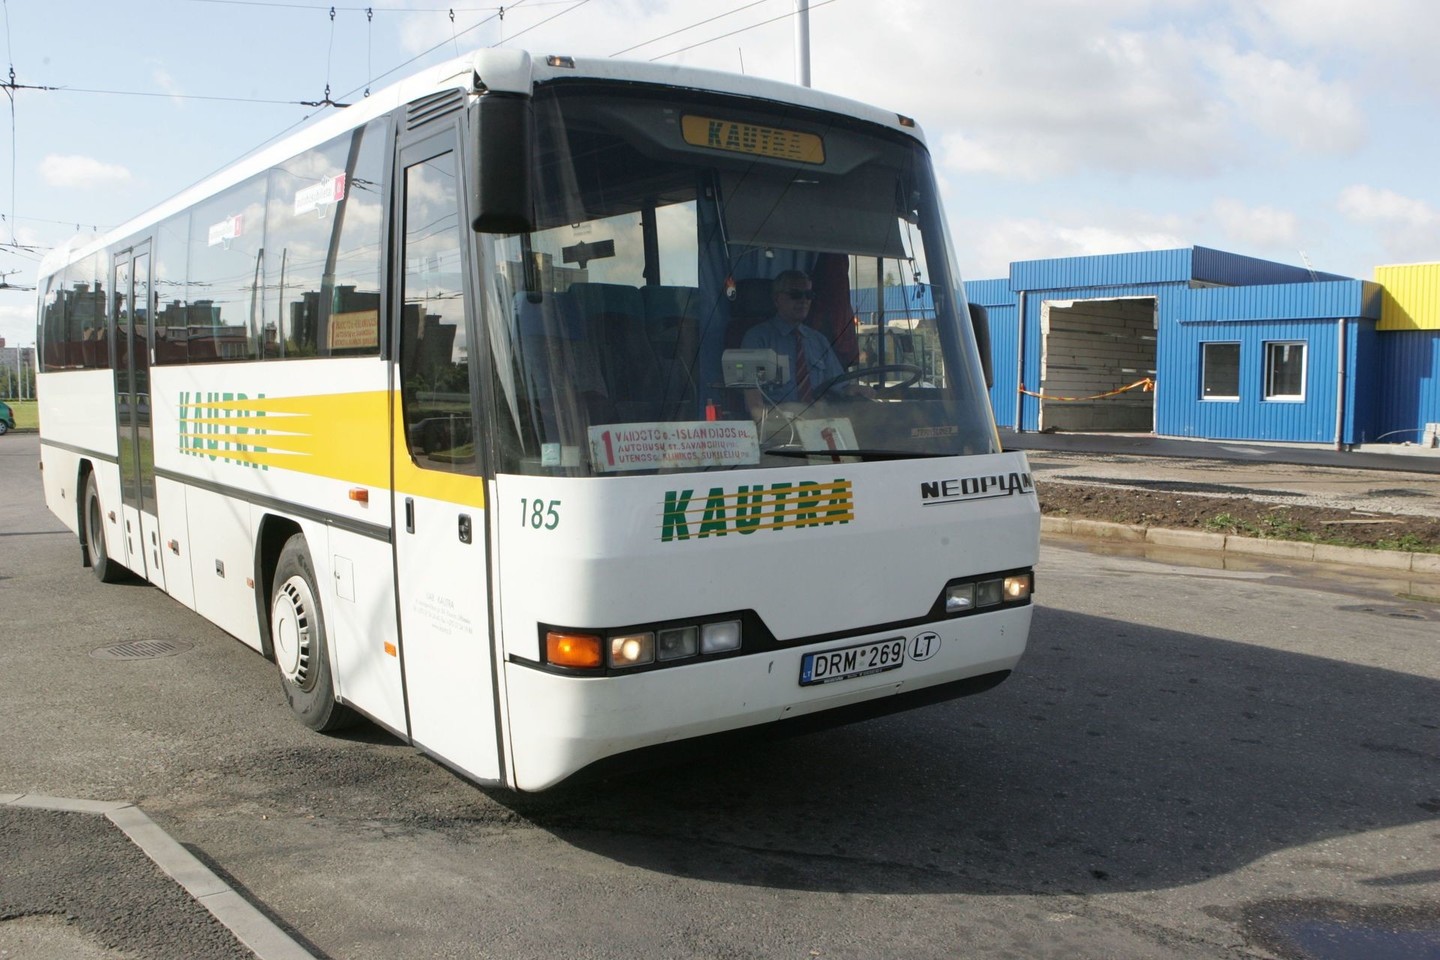 Daugiausia duomenų sunaudojama autobusuose, kurie vyksta ilgiau trunkančiais maršrutais, pavyzdžiui, iš sostinės į Klaipėdą, Palangą ar Mažeikius.<br>A.Barzdžiaus nuotr.